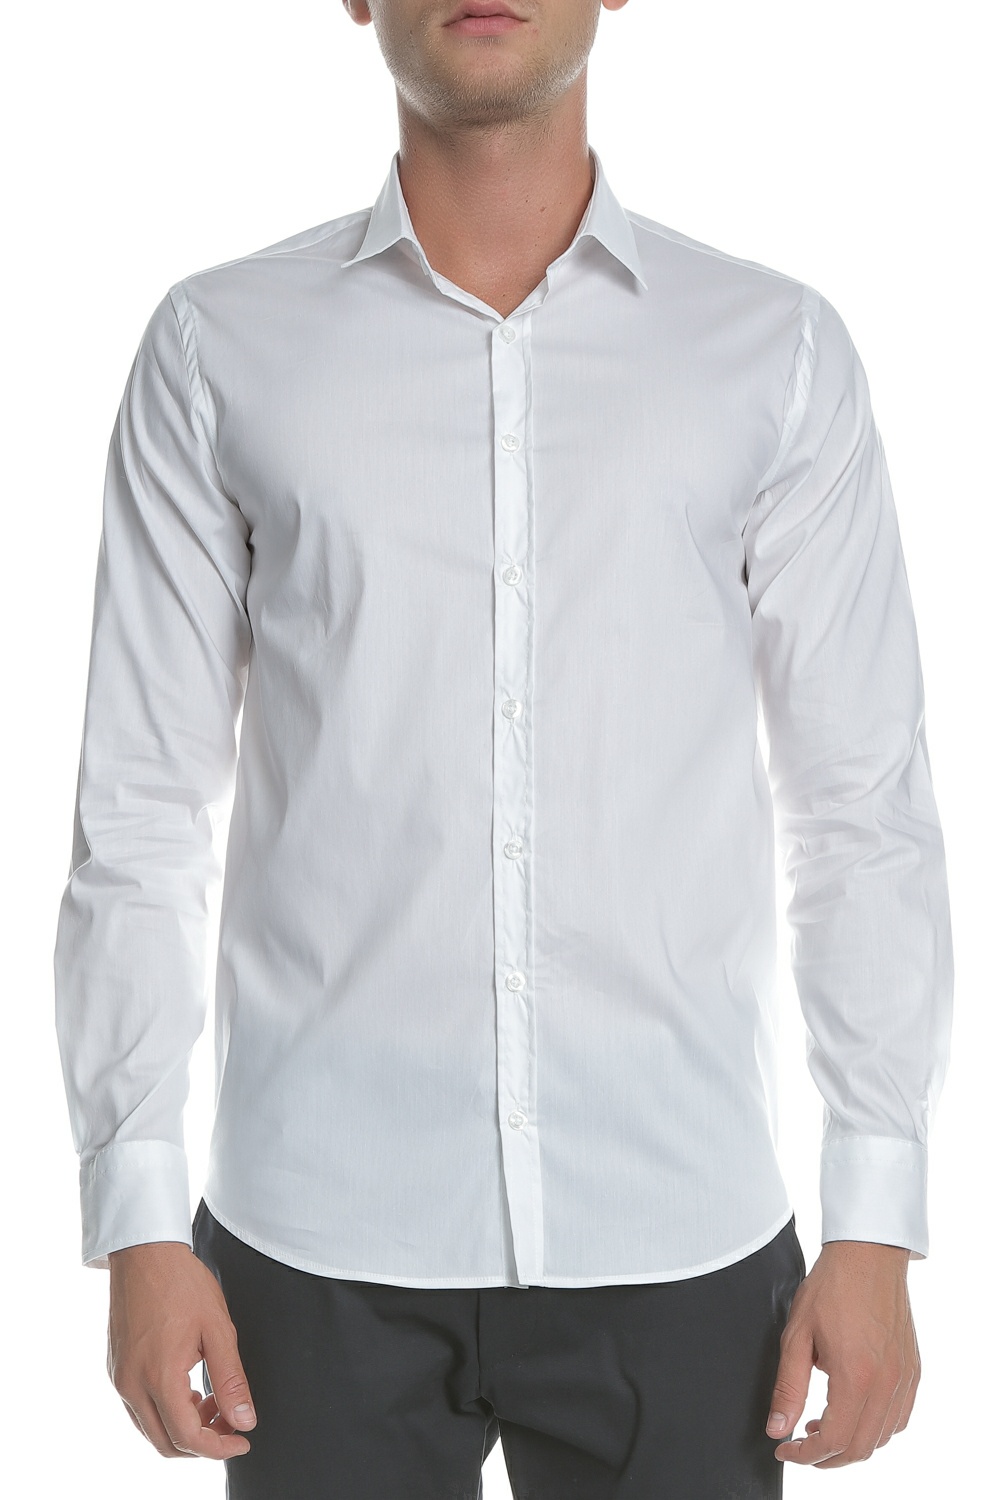 Ανδρικά/Ρούχα/Πουκάμισα/Μακρυμάνικα SSEINSE - Ανδρικό πουκάμισο SSEINSE λευκό